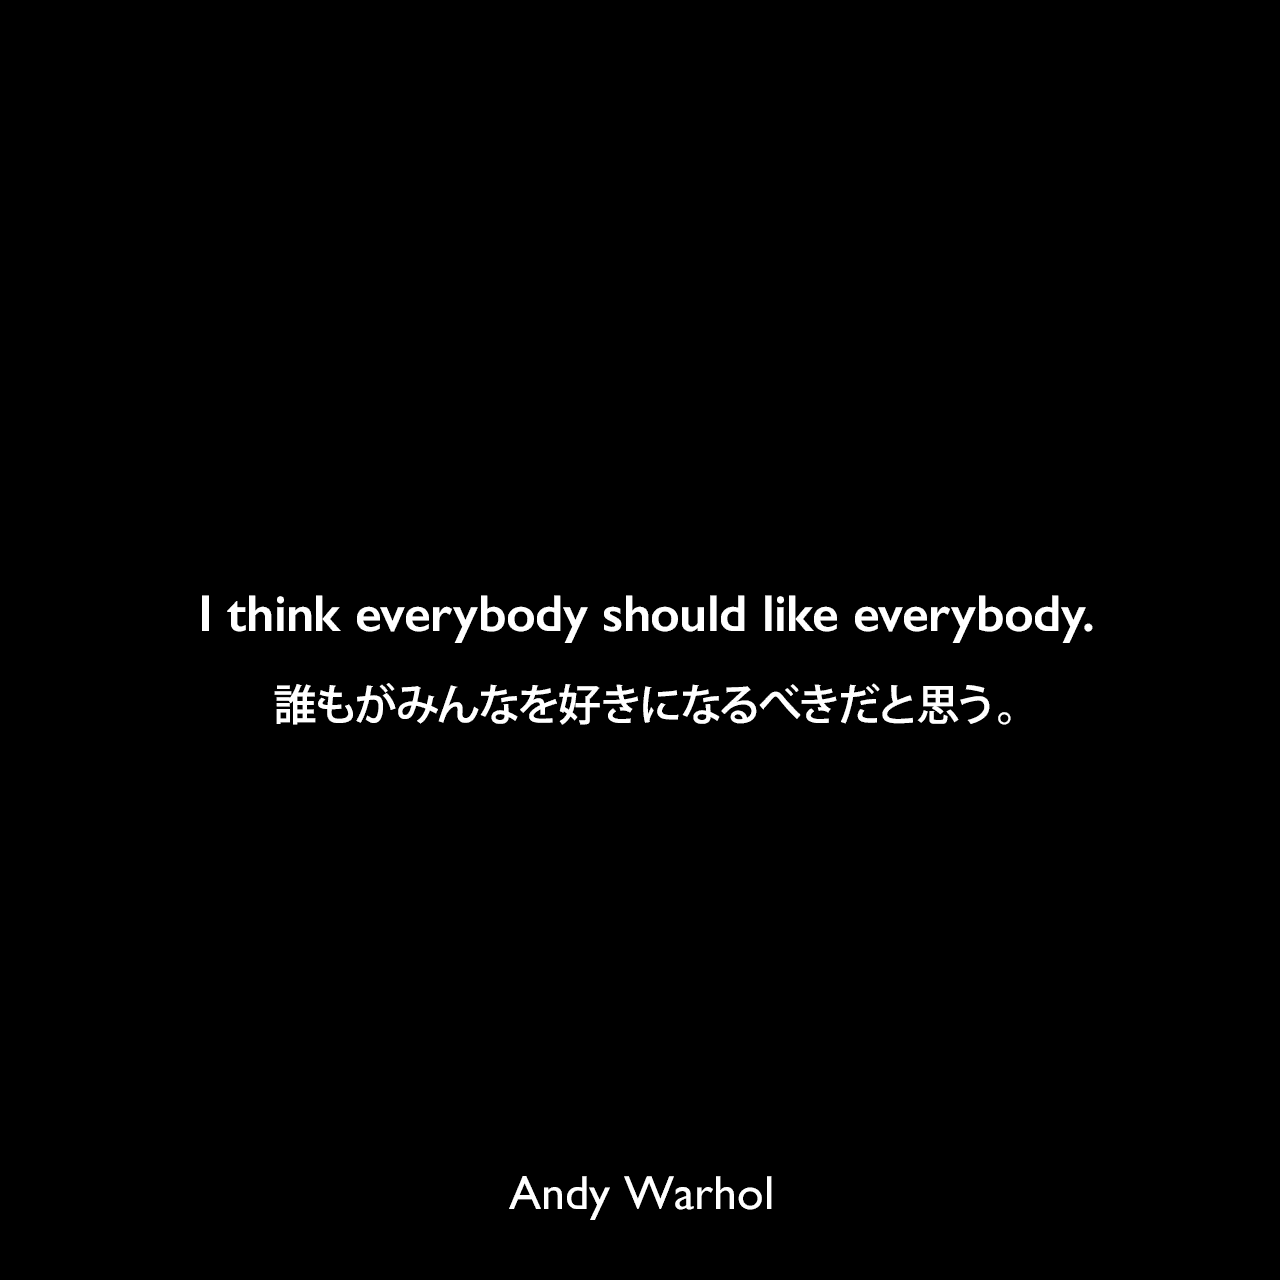 I think everybody should like everybody.誰もがみんなを好きになるべきだと思う。- 1963年11月のARTnews誌のインタビューよりAndy Warhol